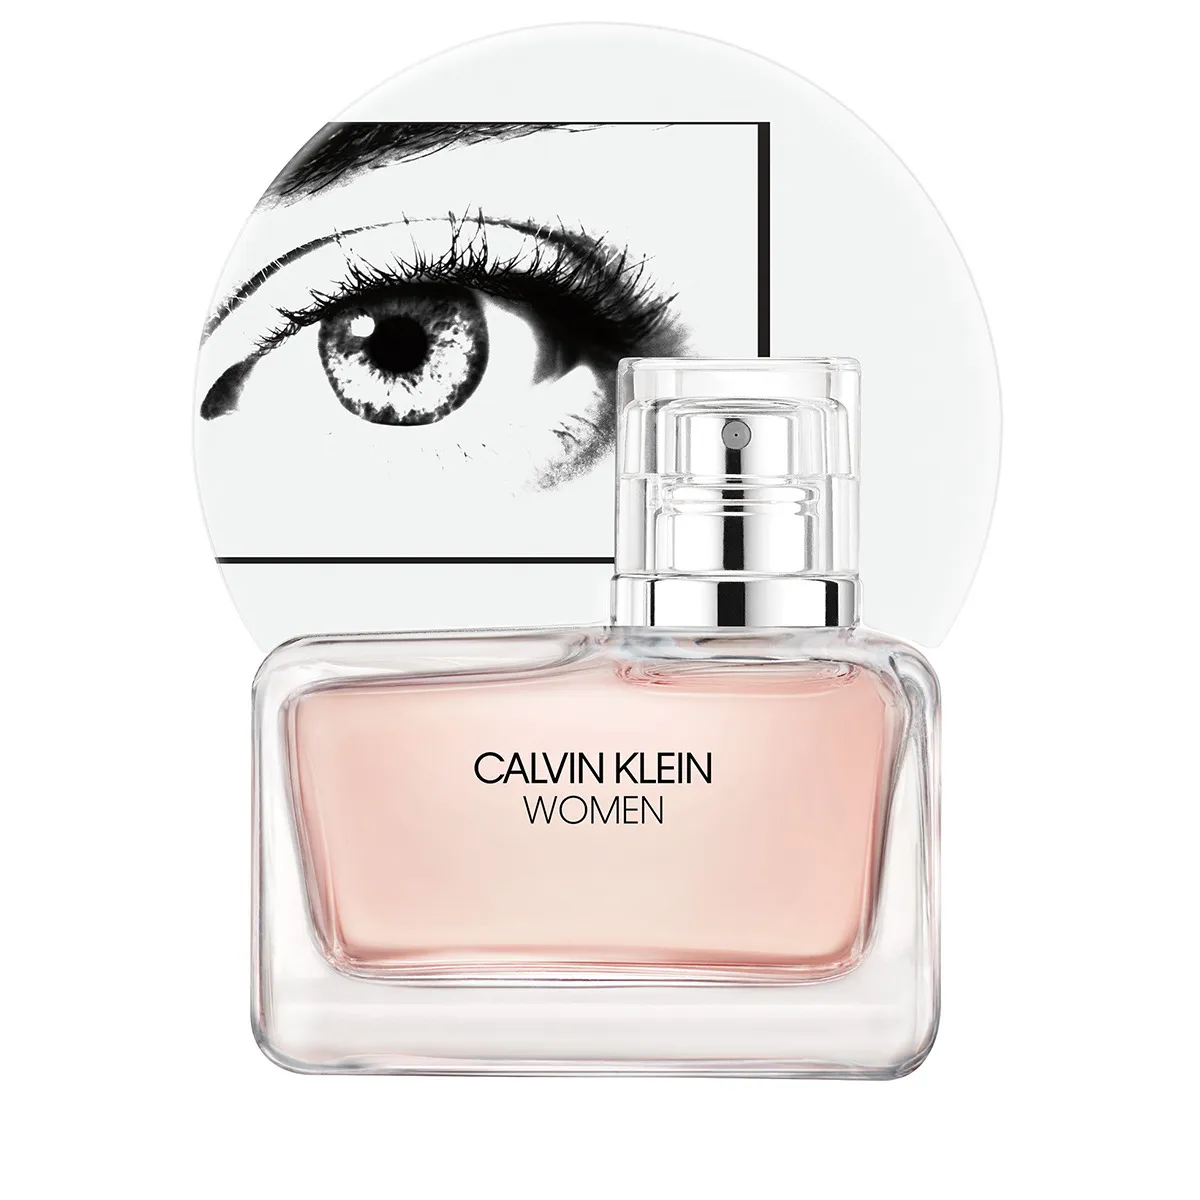 Calvin Klein Women woda perfumowana, 50 ml